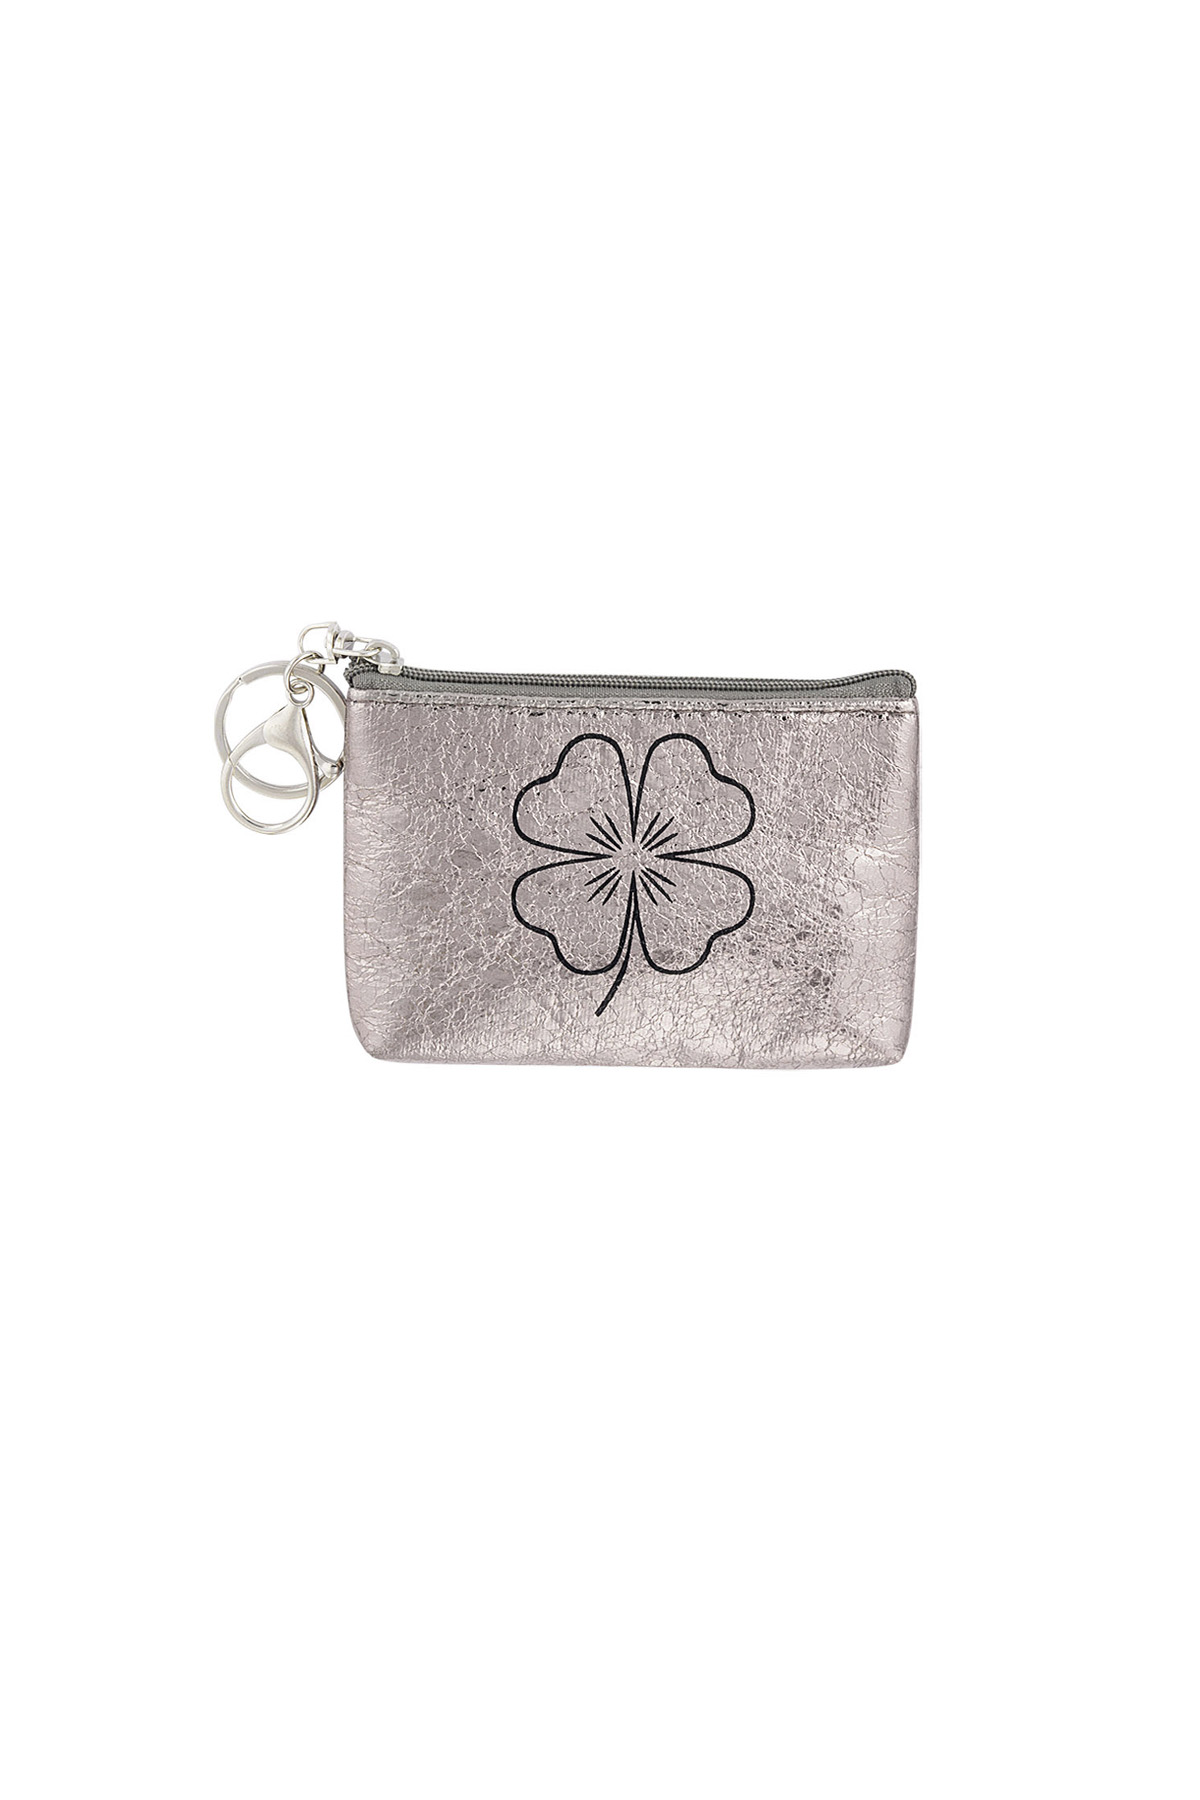 Keychain wallet metallic clover - silver